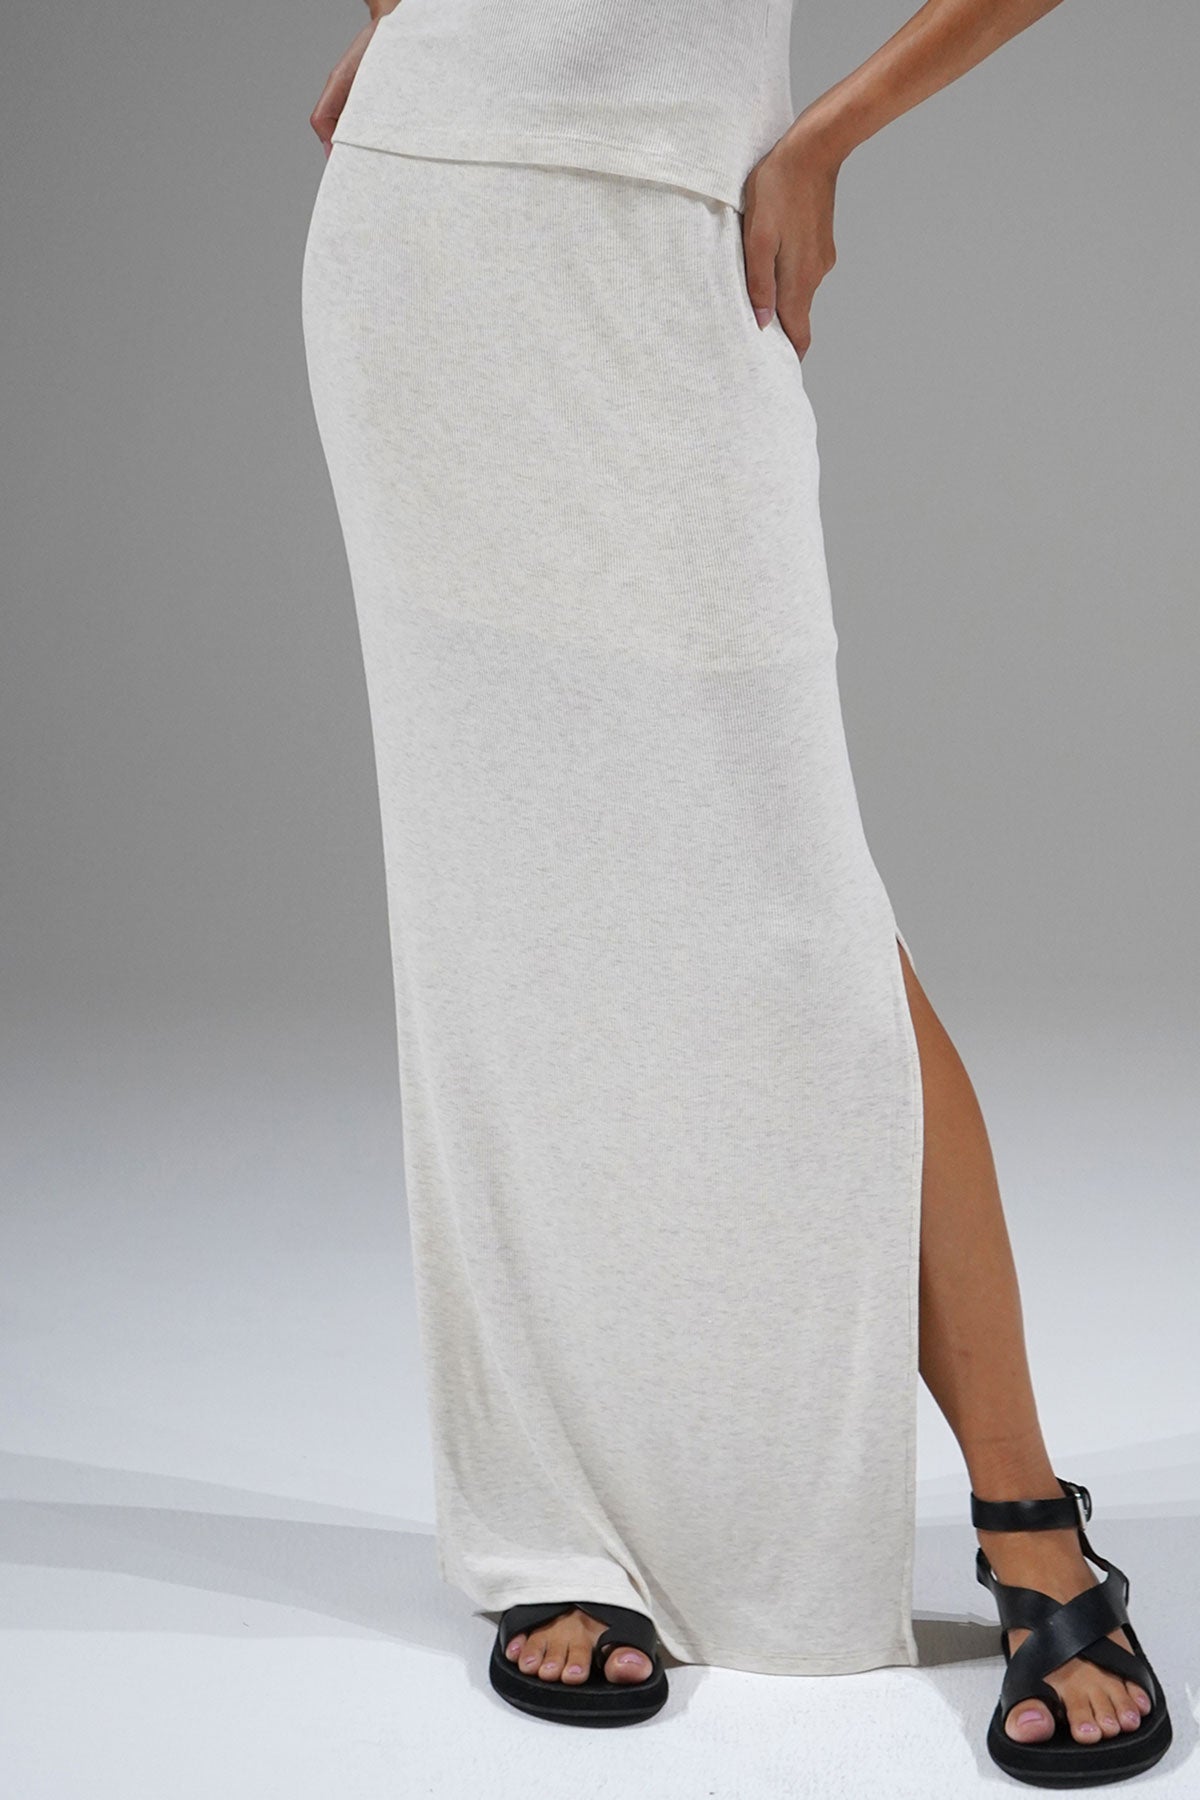 חצאית LNA Steph Rib בצבע לבן הת'ר